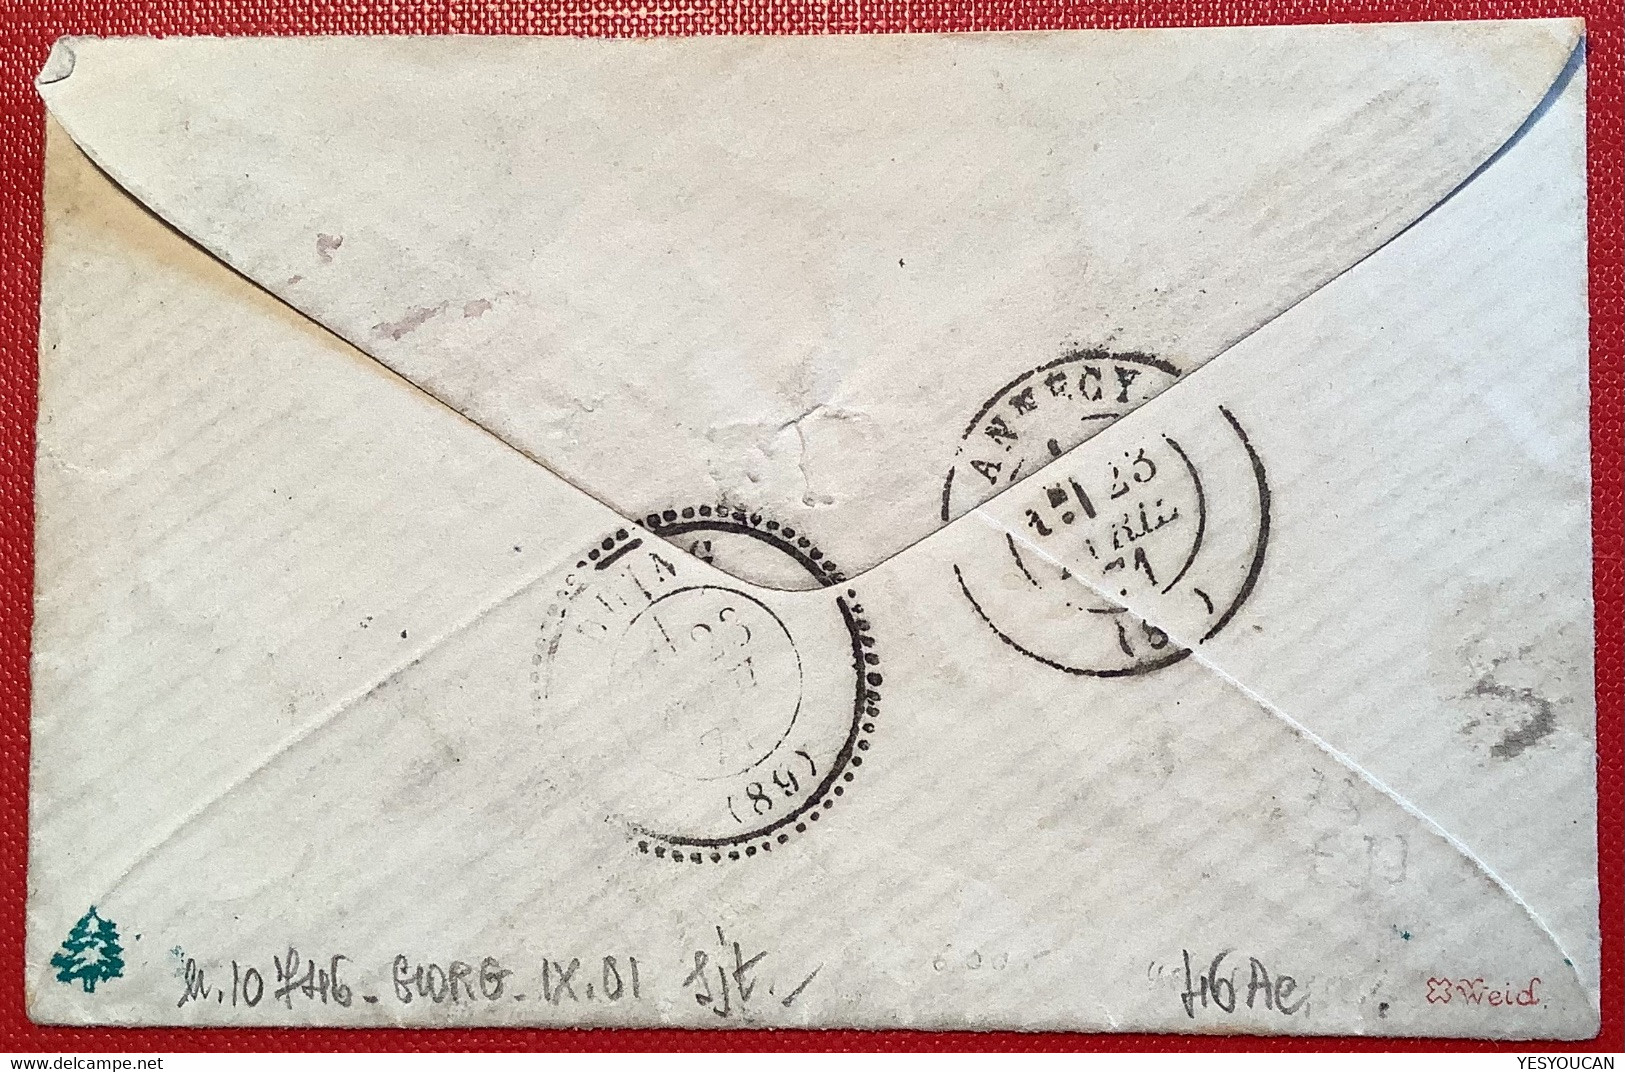 #46Ad TTB NUANCE RARE BLEU-OUTREMER lettre BONNEVILLE1871(89 Hte Savoie)20c Bordeaux t.III, rep.1 cert. Scheller (France